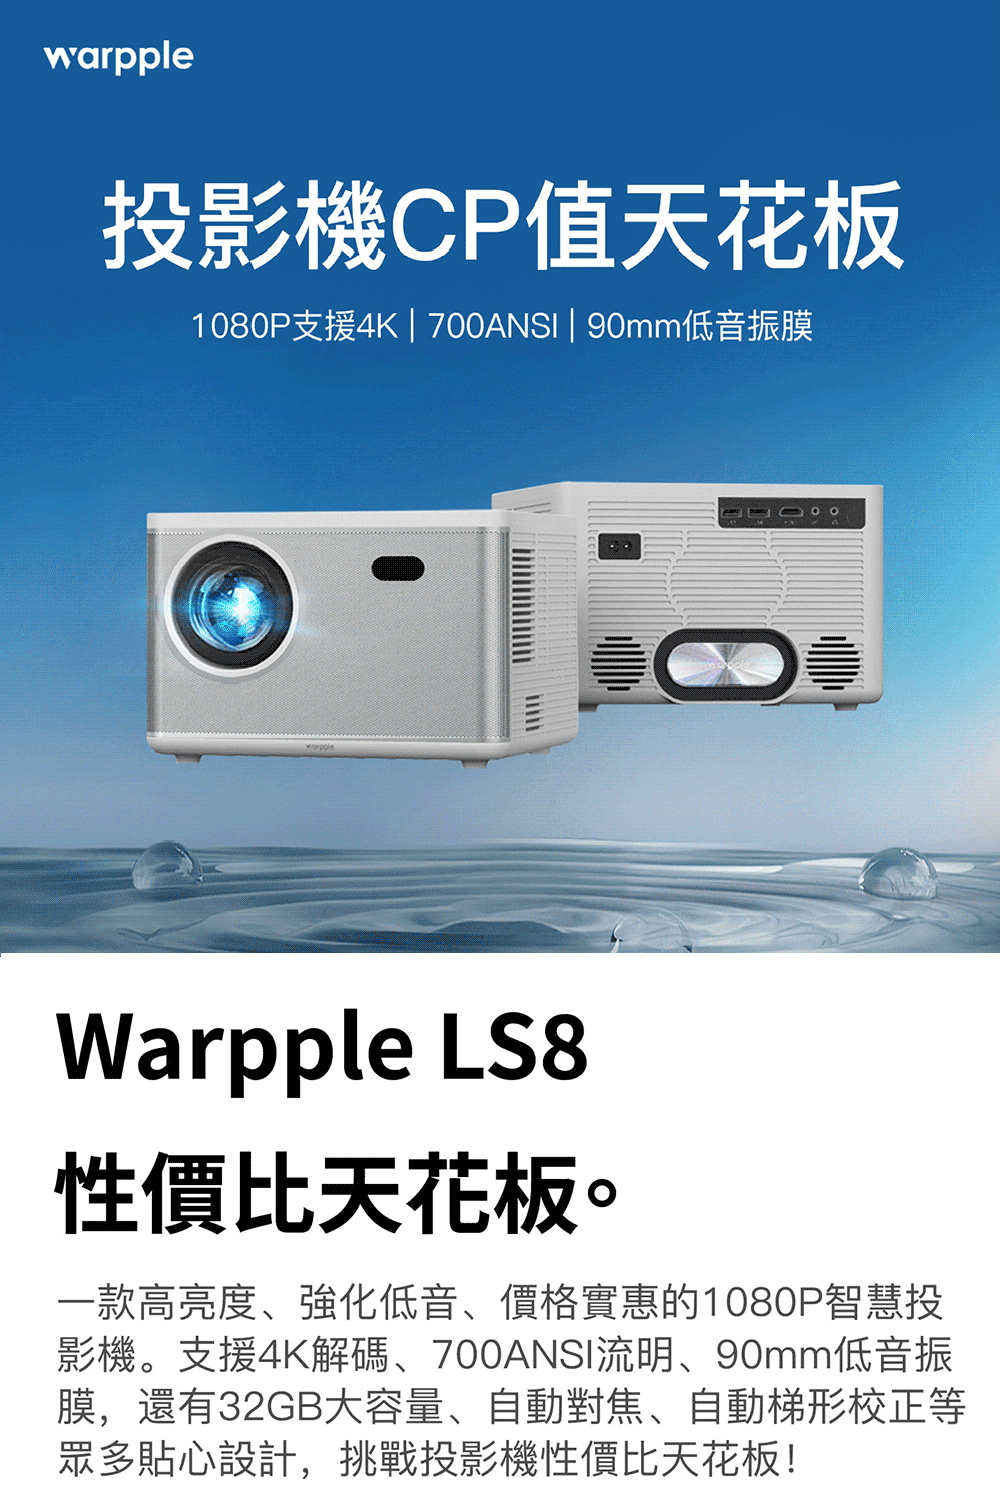 Warpple 超高亮1080P智慧投影機(LS8)優惠推薦